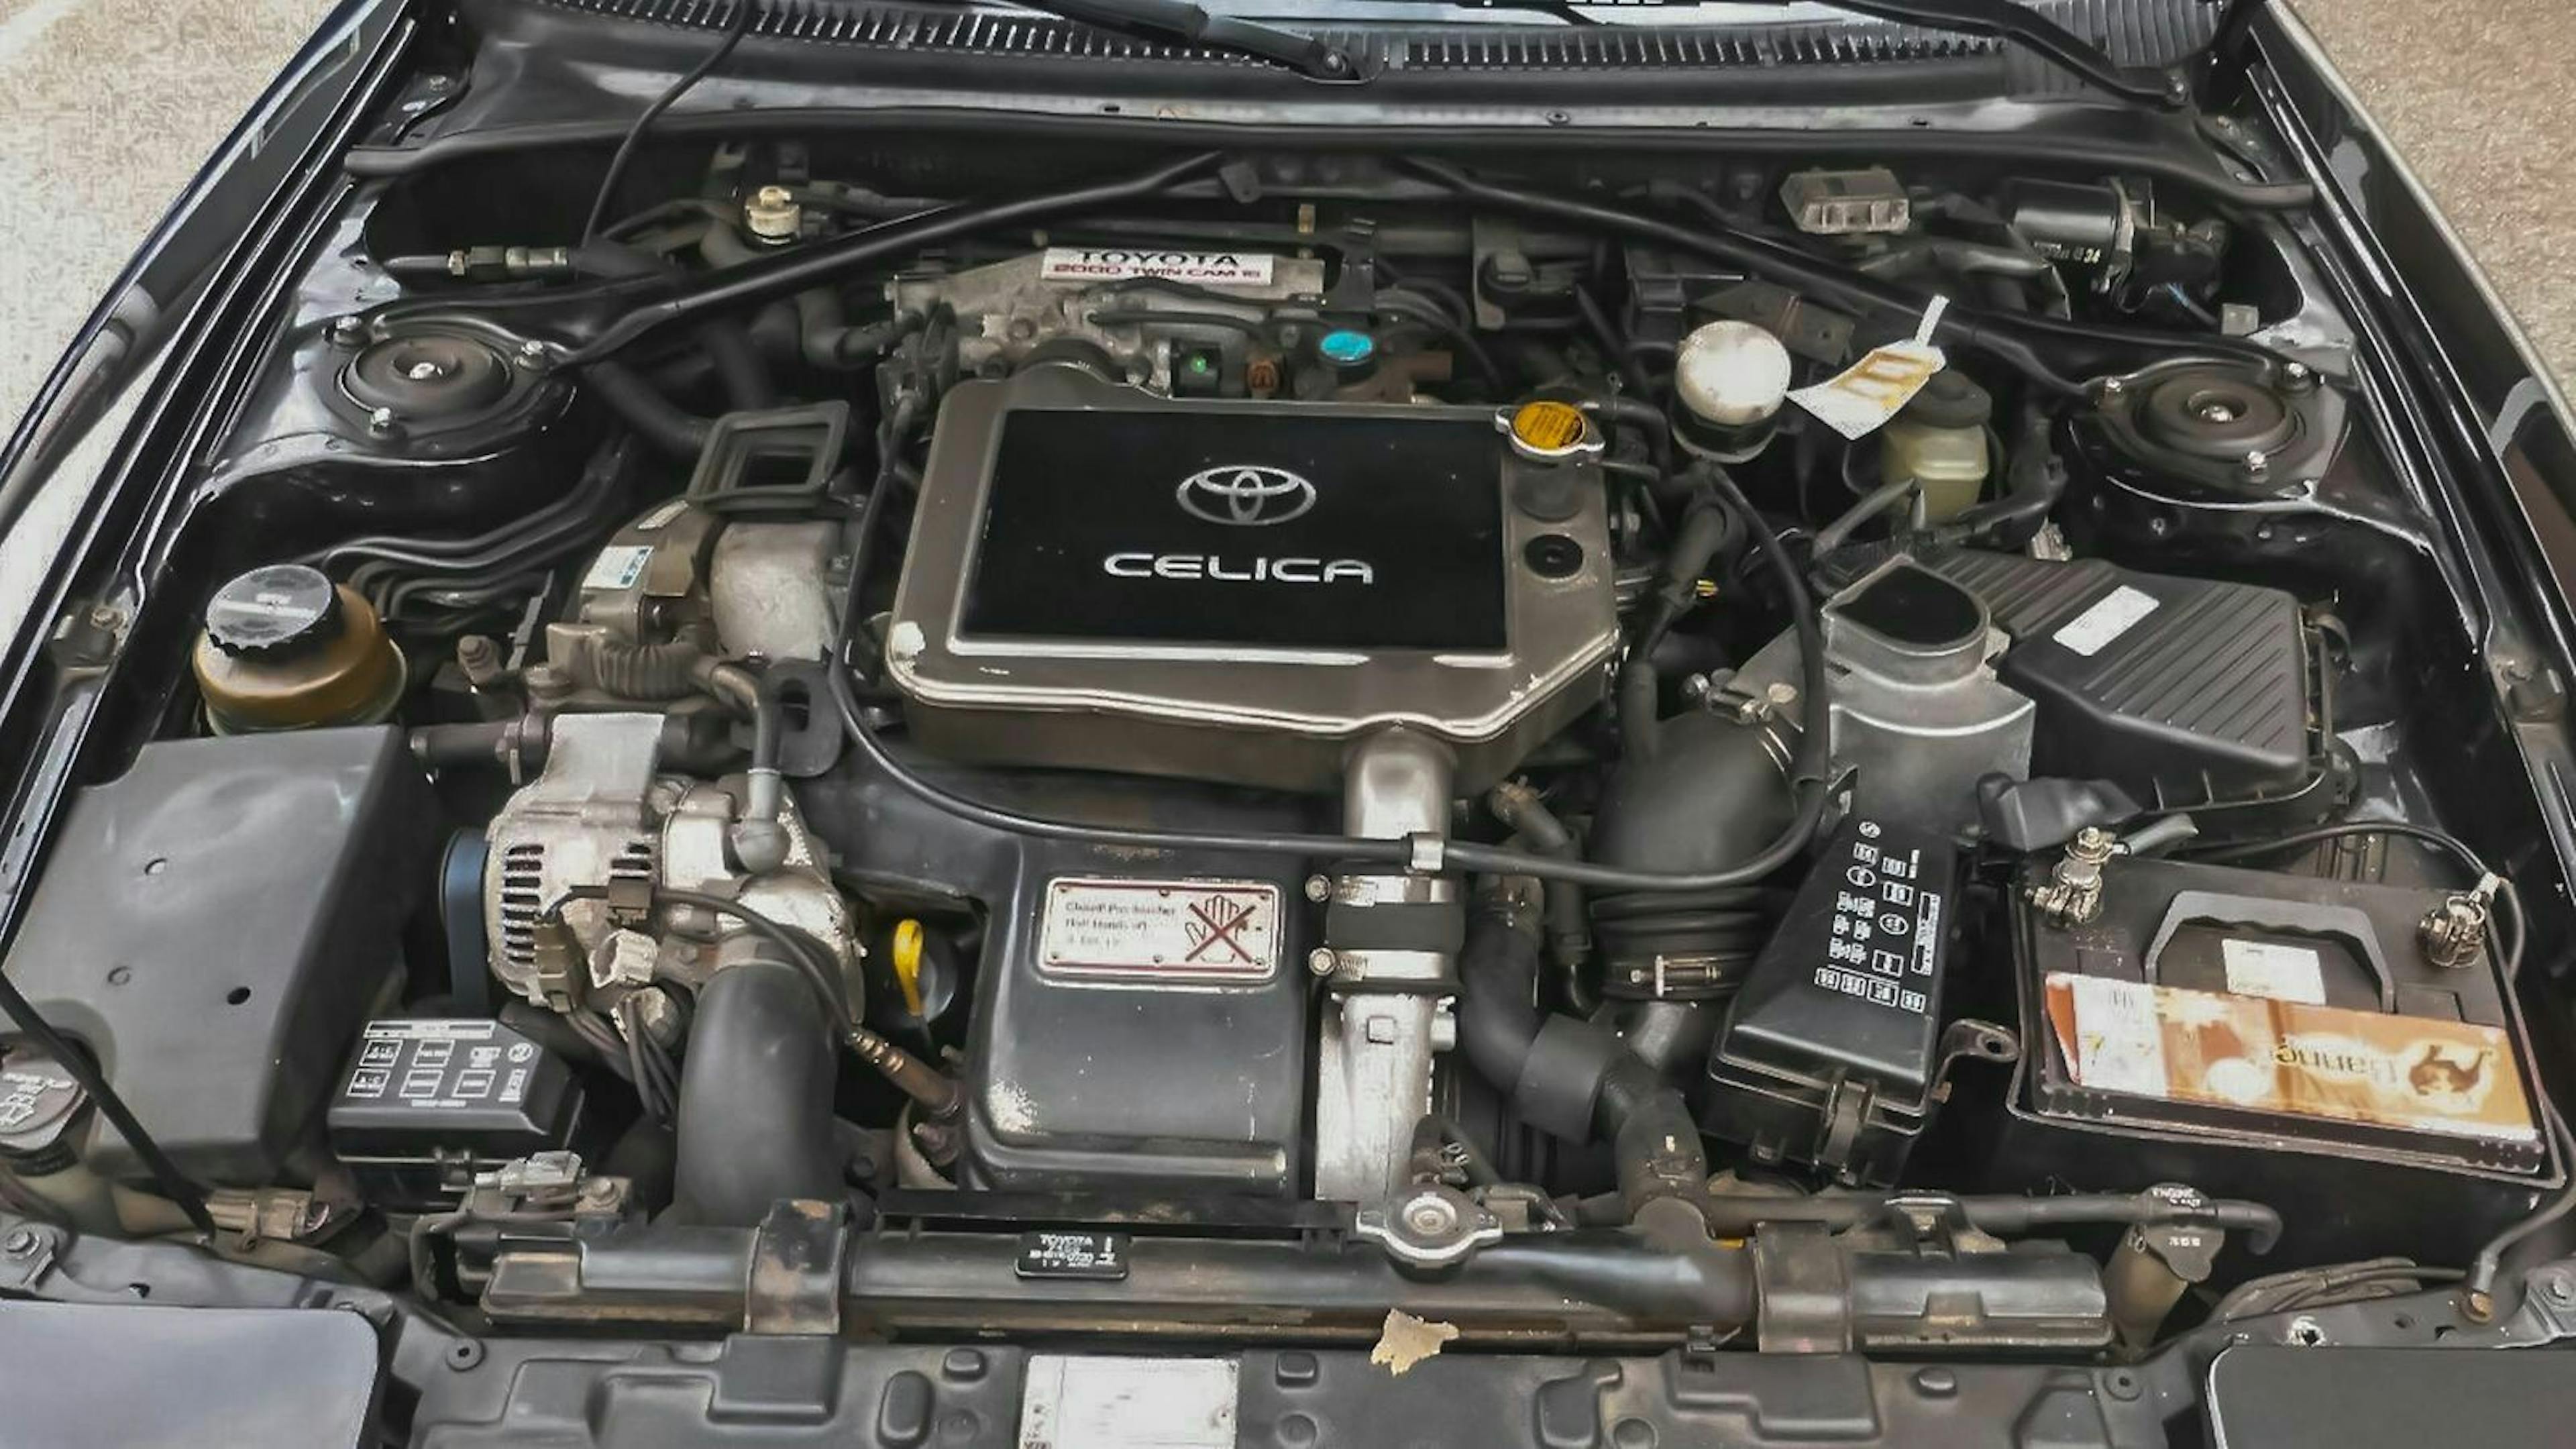 Das Bild zeigt den Motorraum eines Toyota Celica 4WD Carlos Sainz